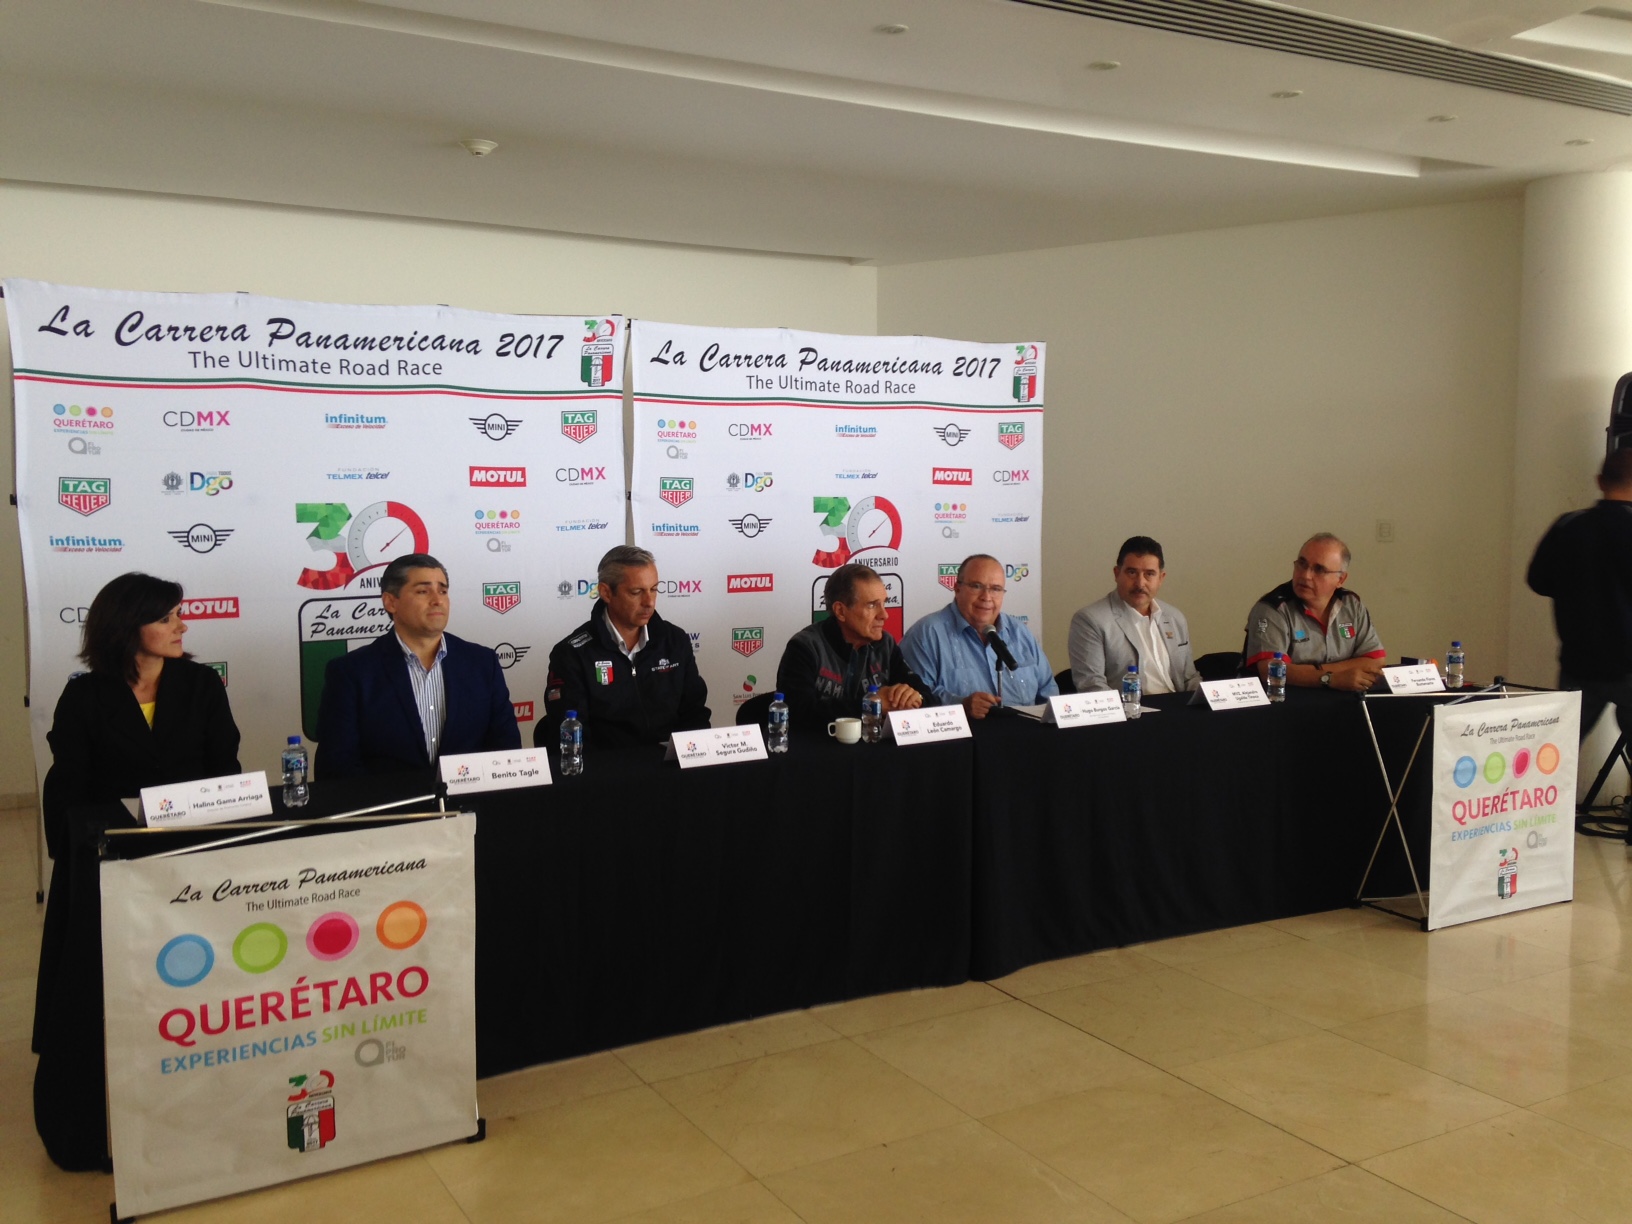  Más 90 corredores de 13 países vendrán a Querétaro para la trigésima edición de la Carrera Panamericana